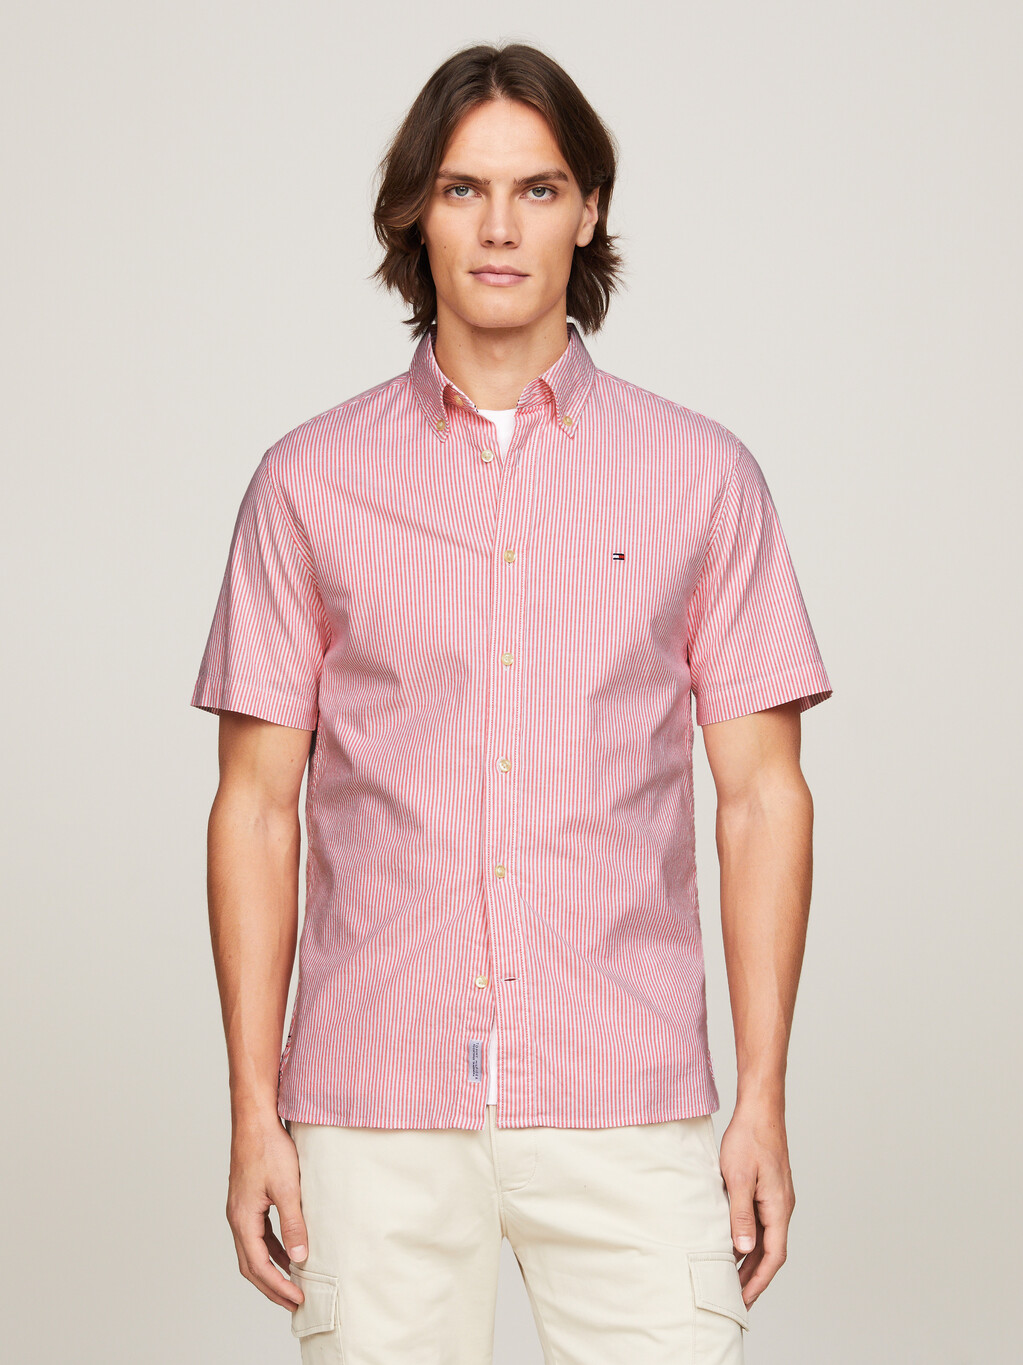 旗幟條紋短袖恤衫, Laser Pink / Optic White, hi-res